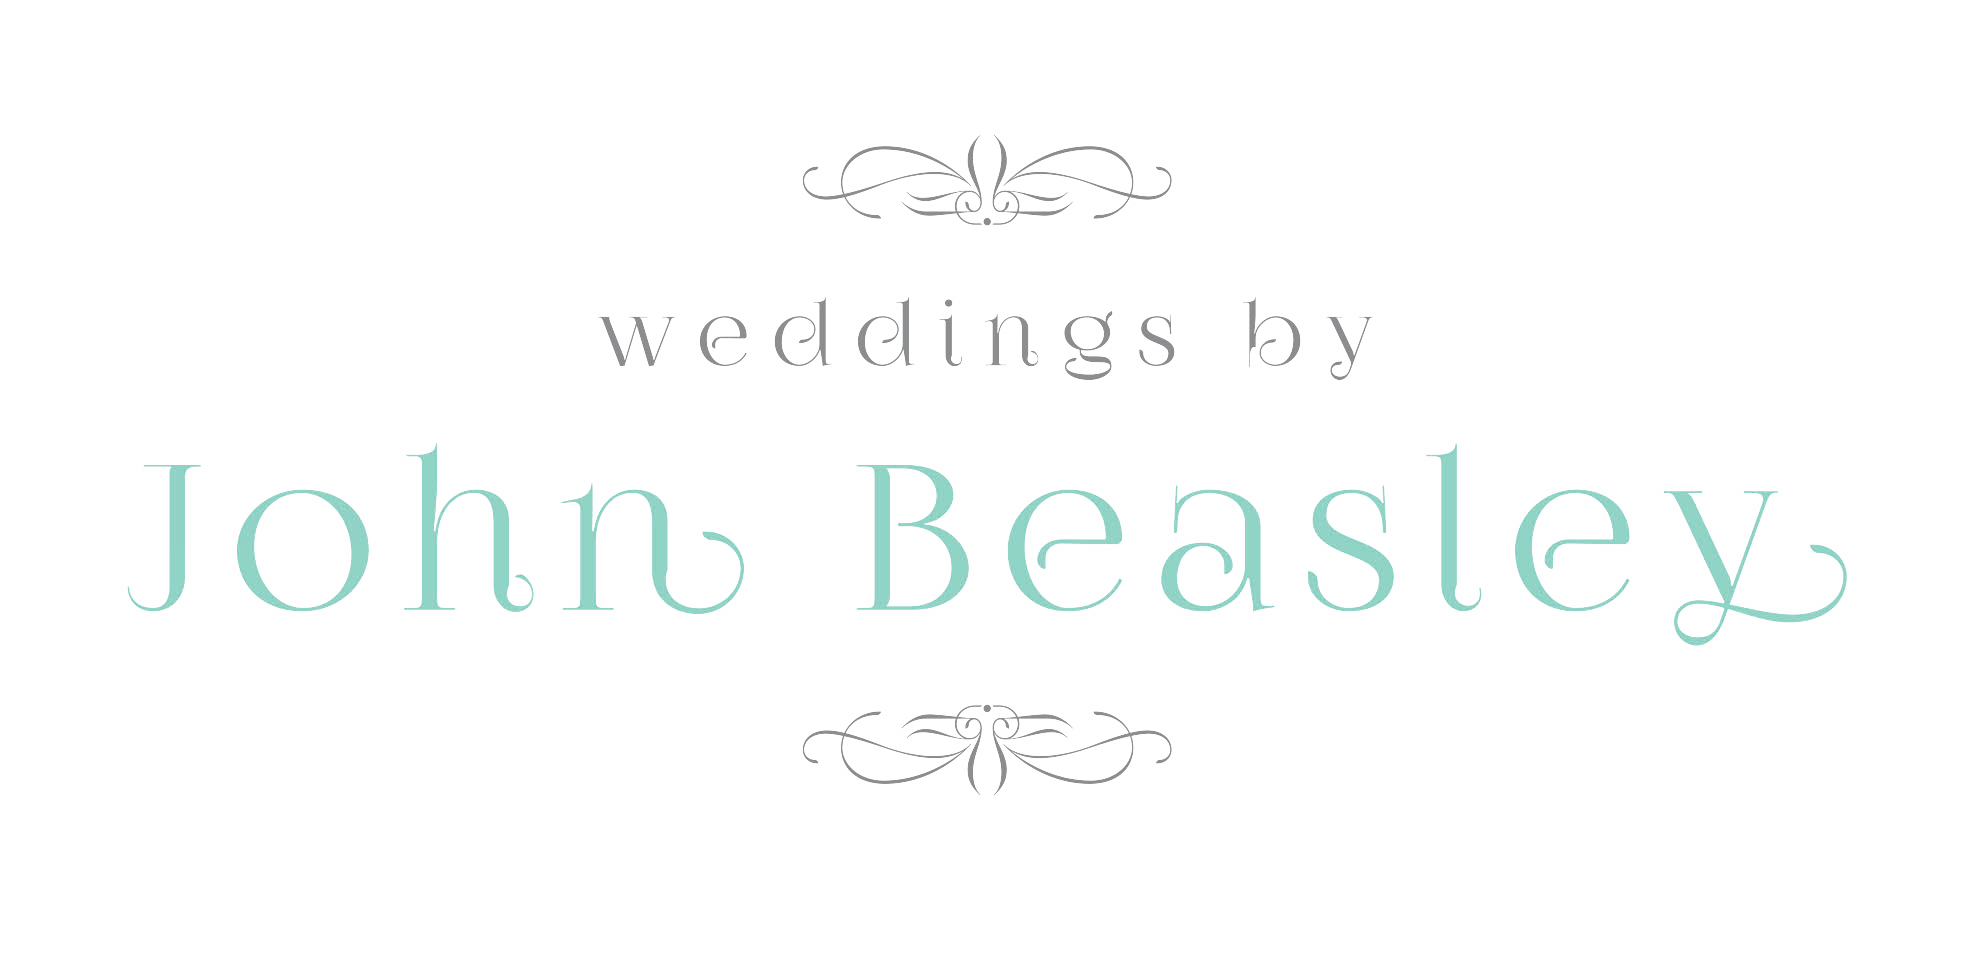 Weddings by John Beasley 